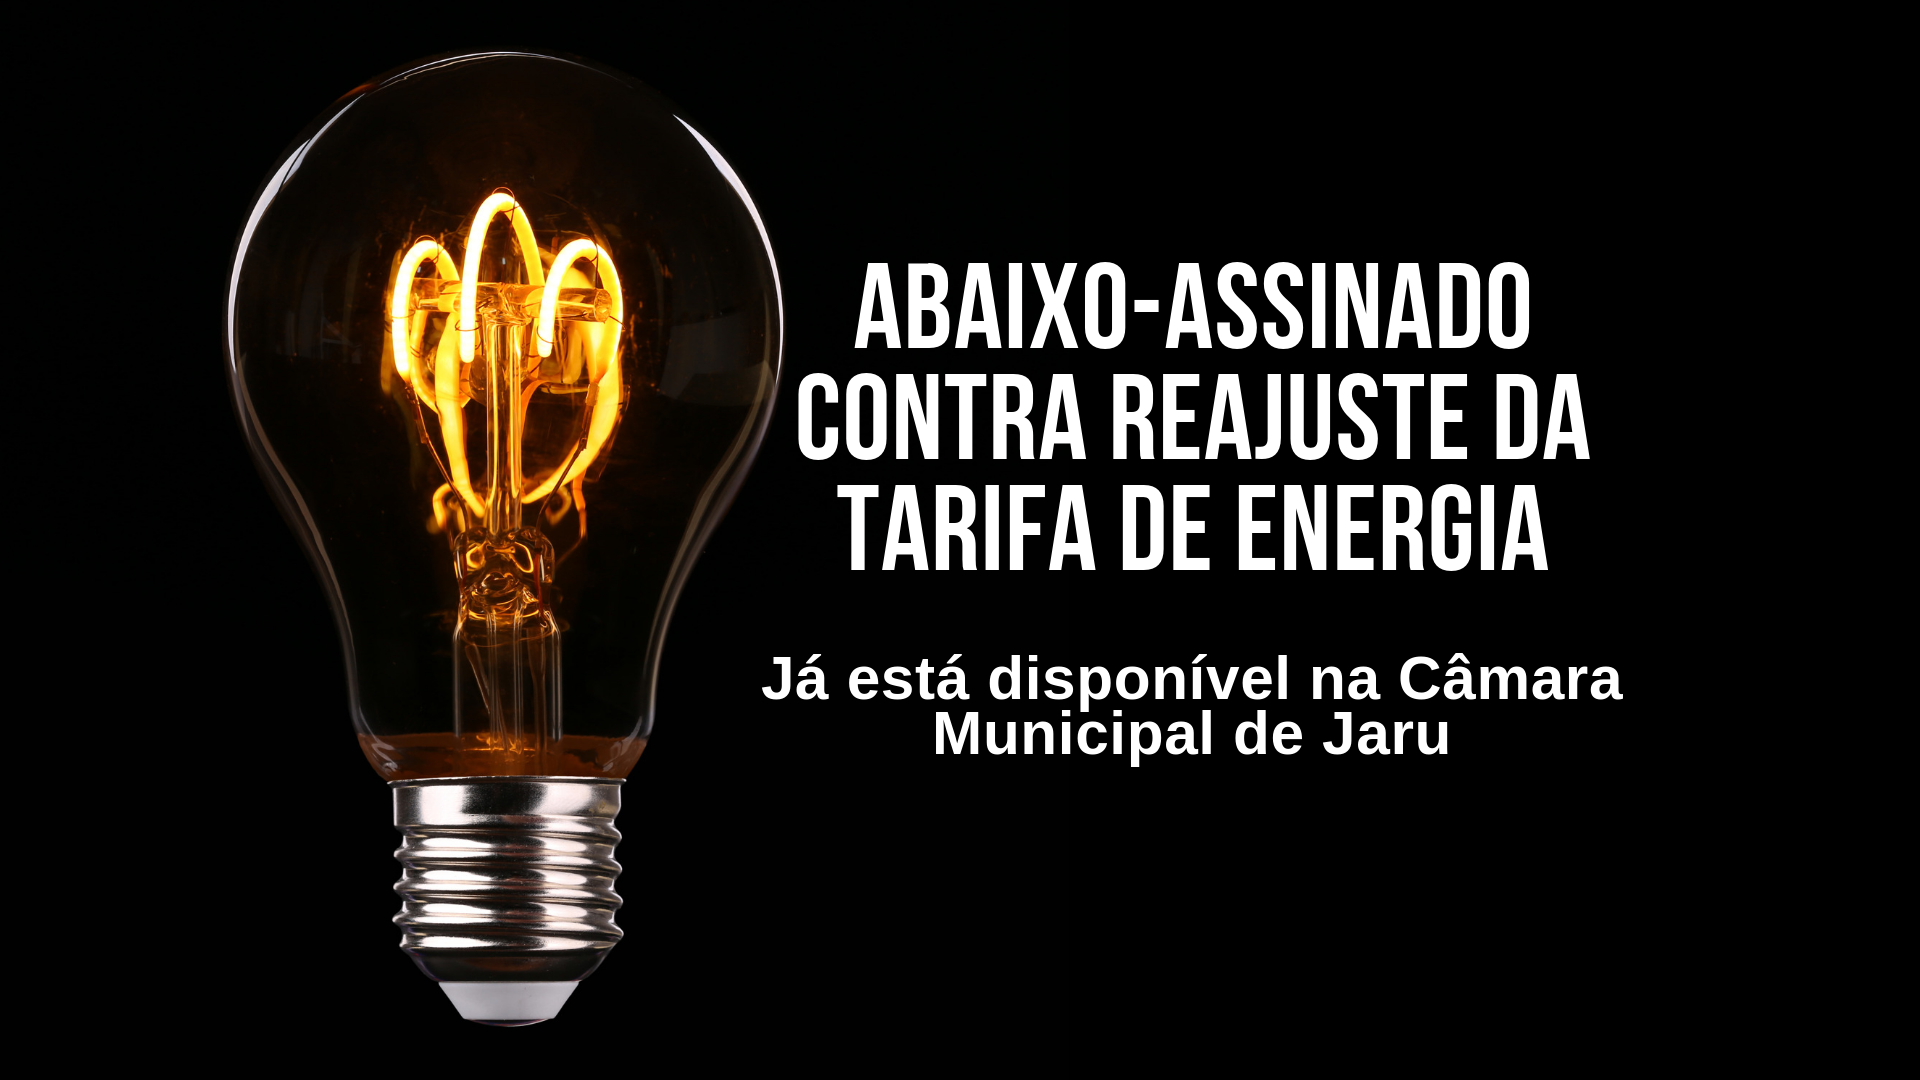 Abaixo-assinado contra reajuste da tarifa de energia está disponível na Câmara Municipal de Jaru